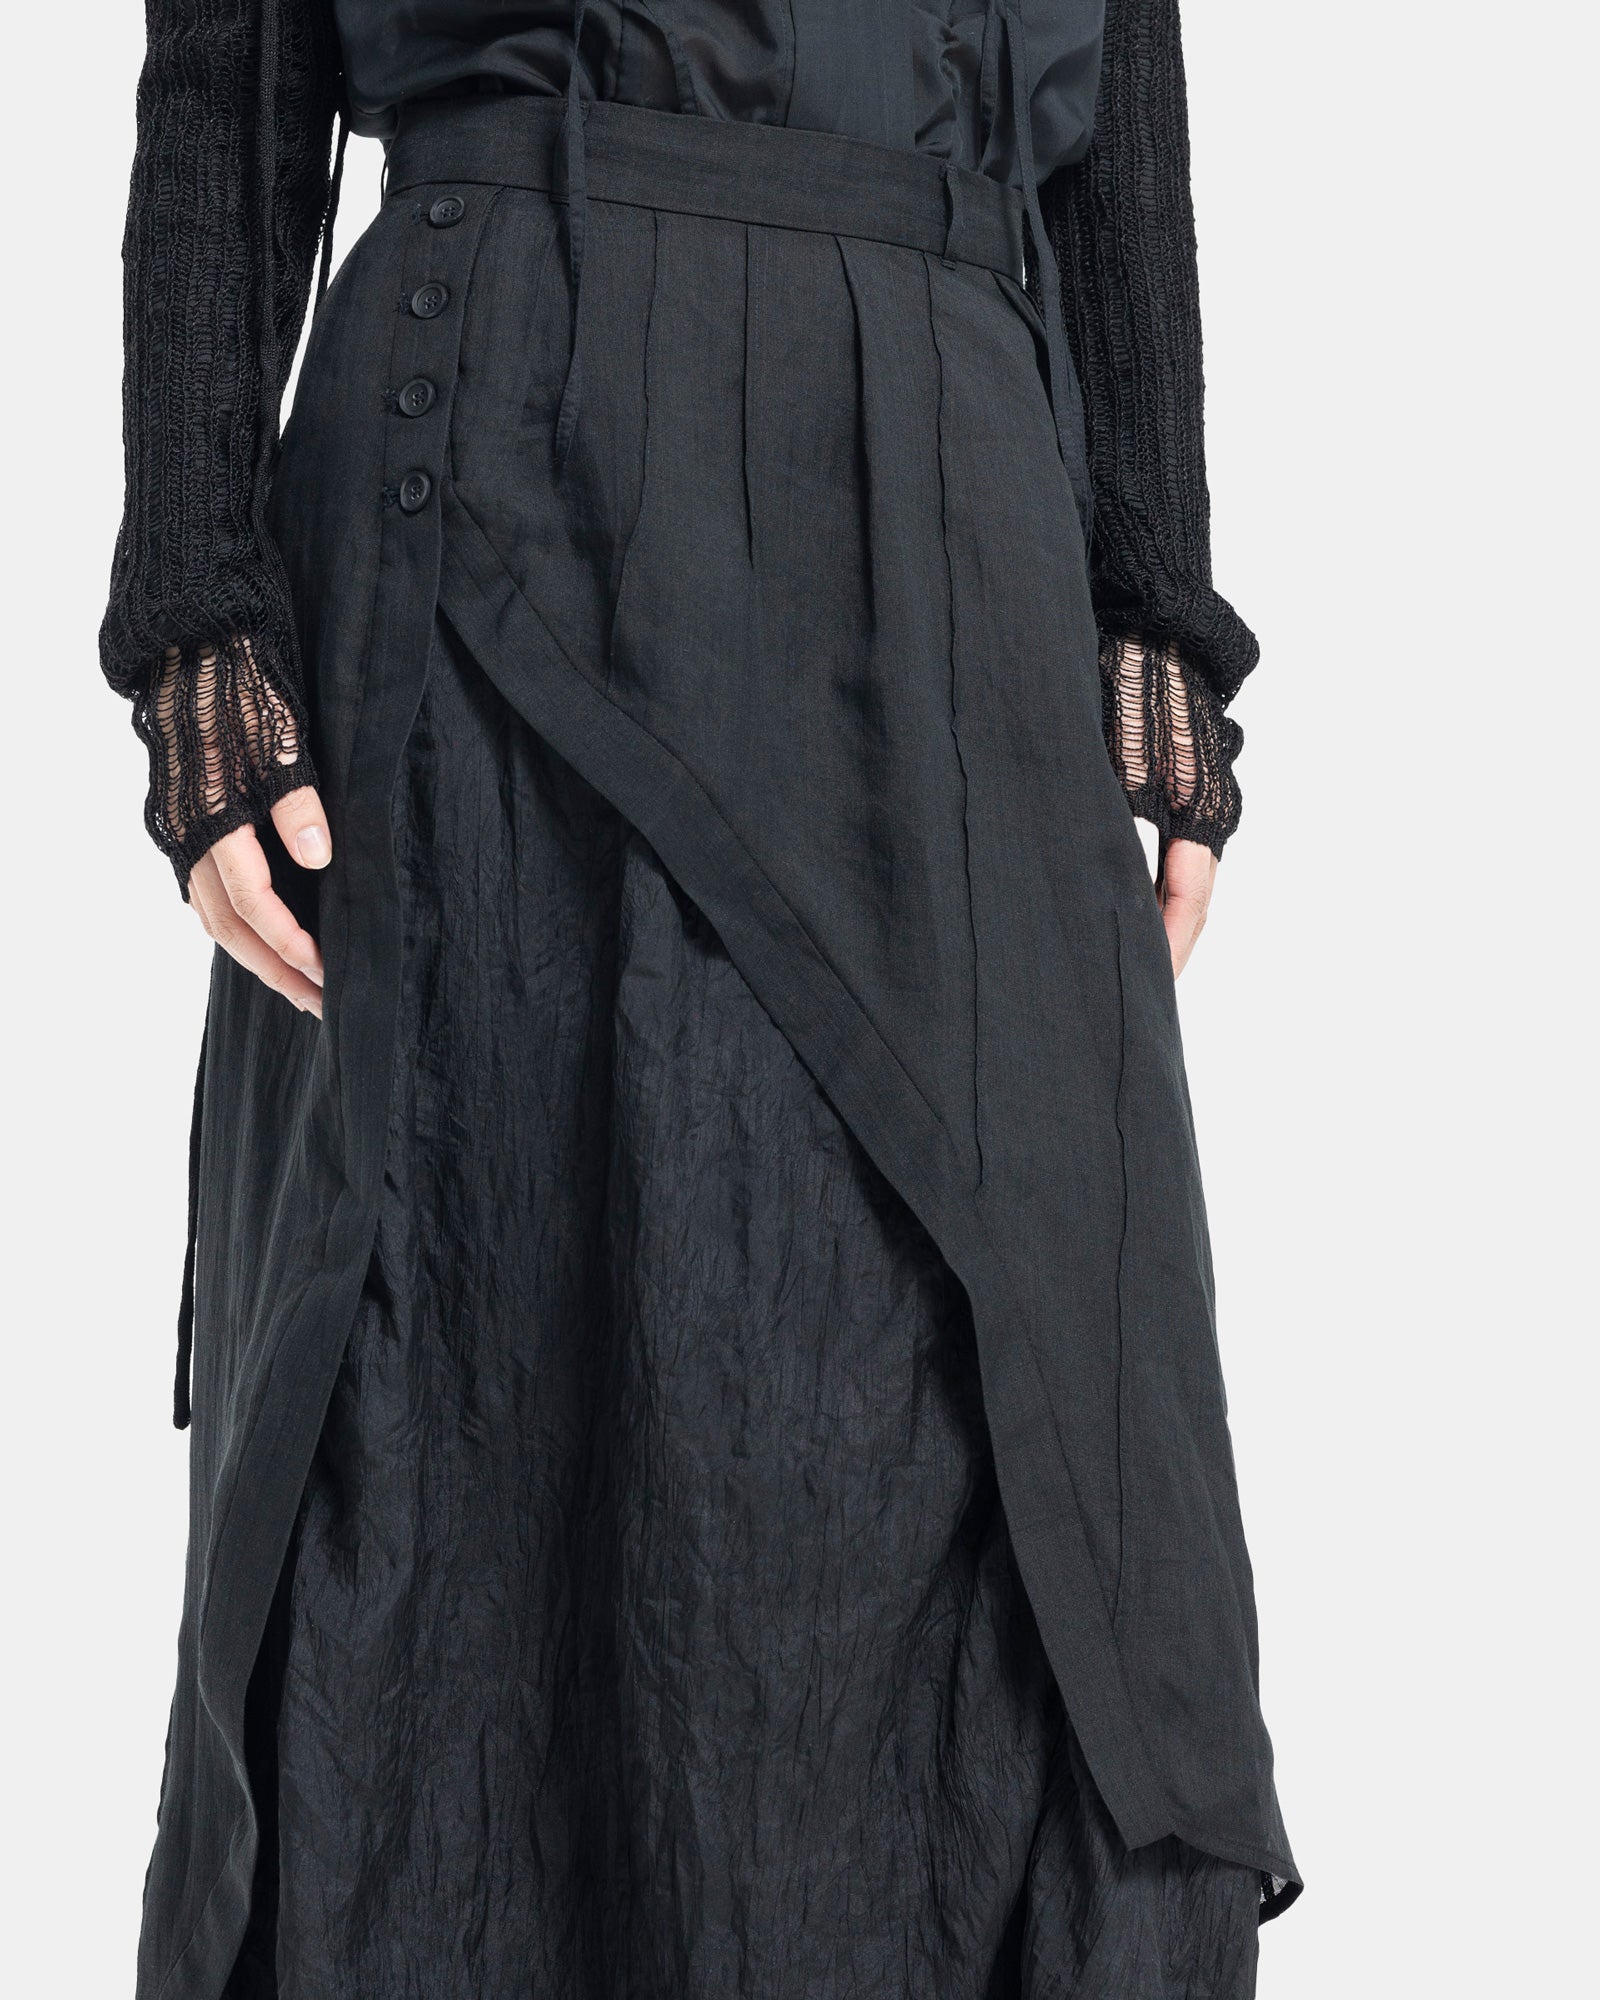 Female model wearing Professor.E black asymmetric skirt on white background